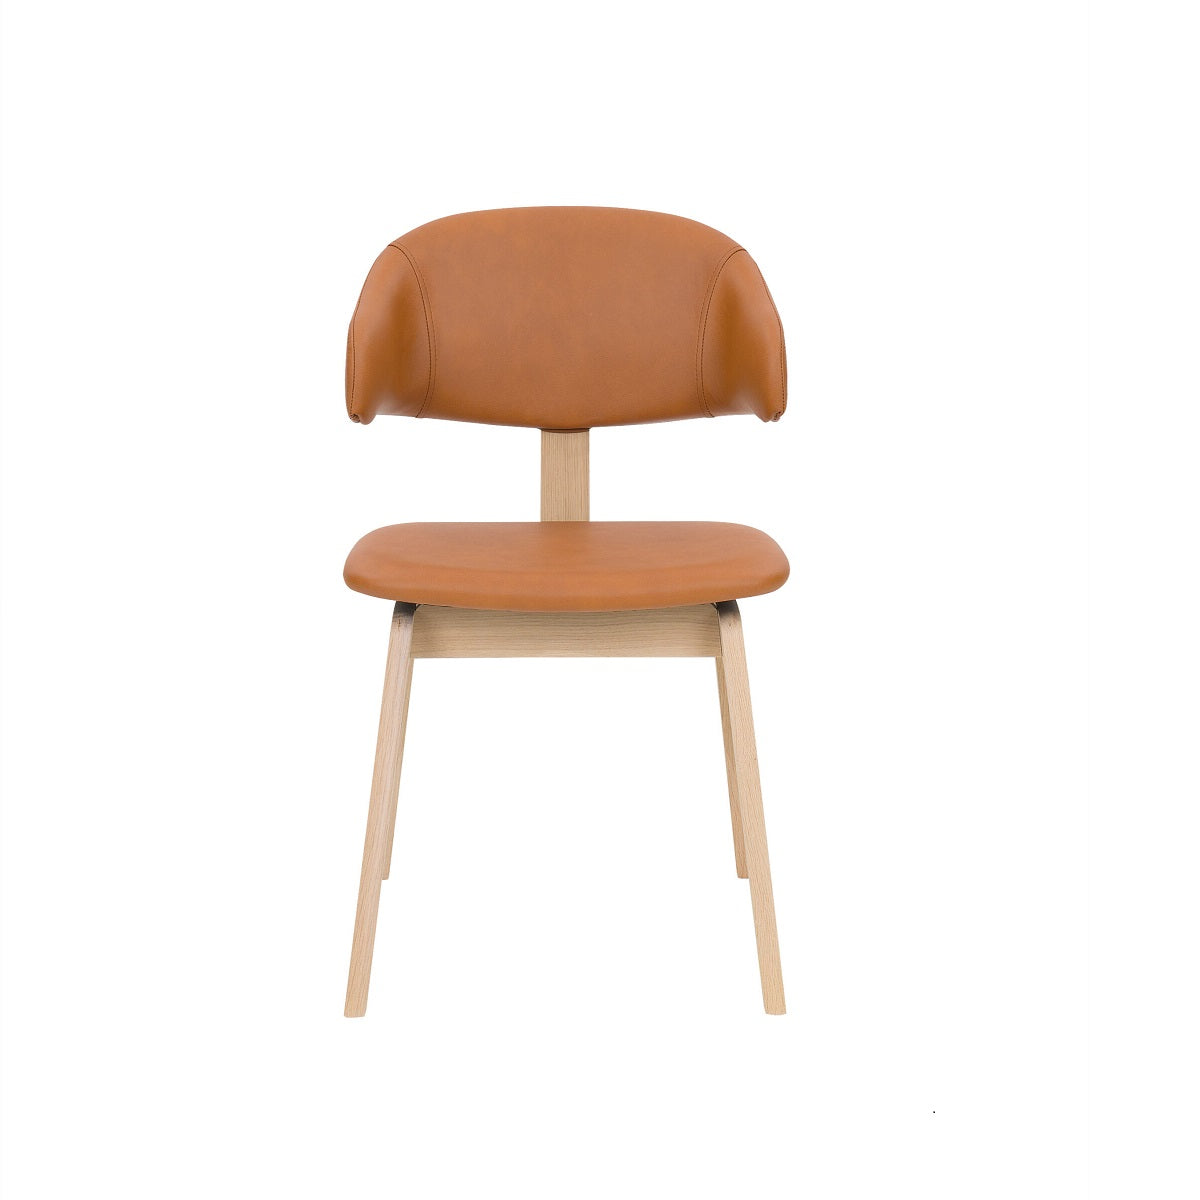 Maior spisebordsstol fra PBJ Designhouse i eg hvidolie med cognacfarvet læder